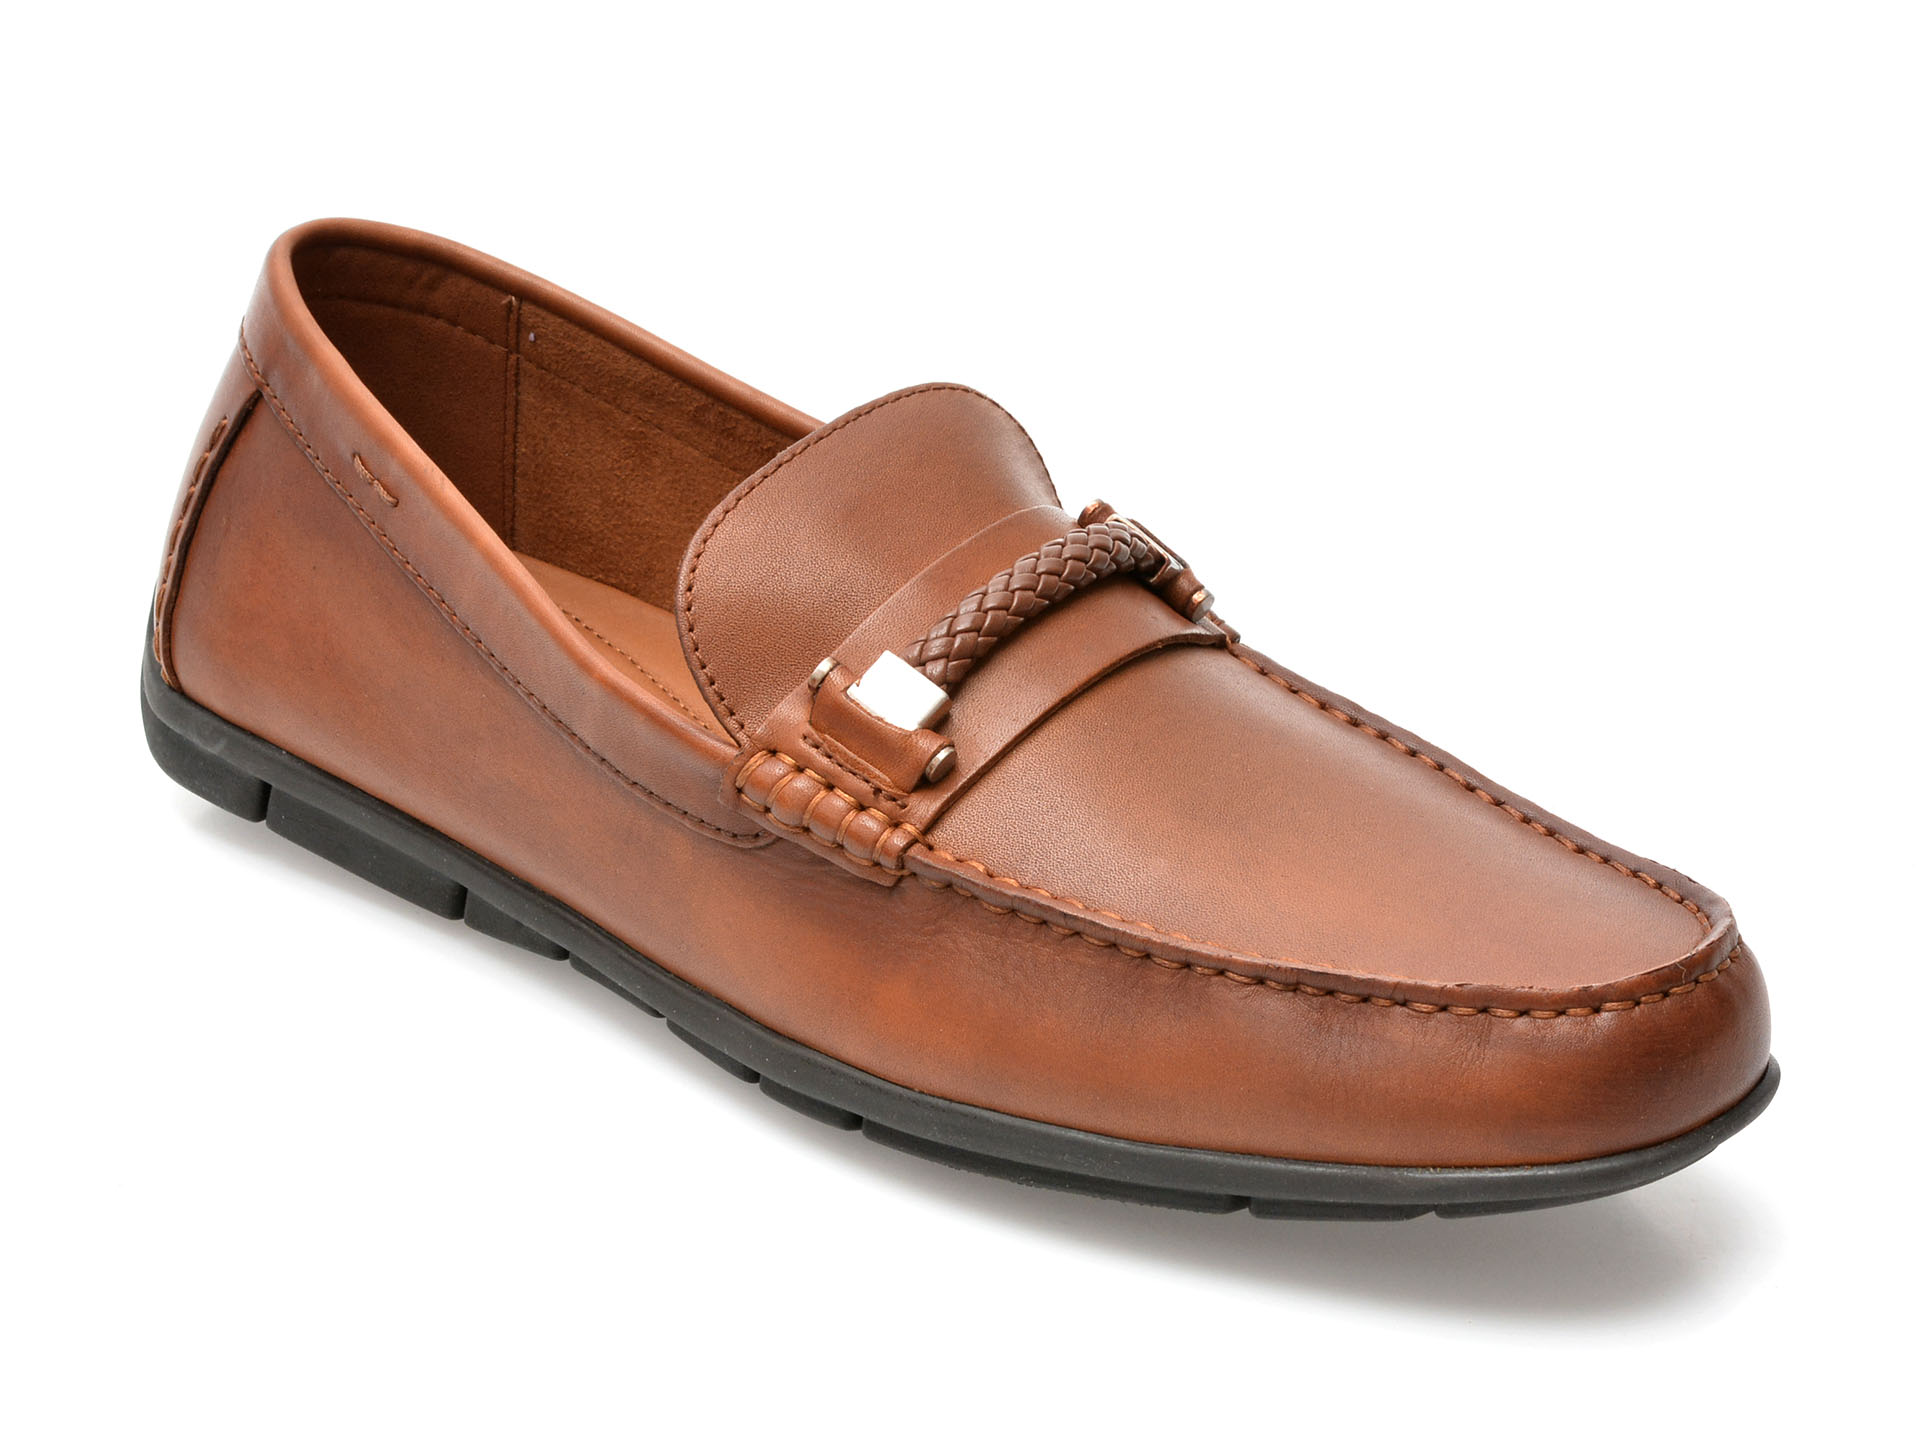 Pantofi ALDO maro, ZIRNUFLEX220, din piele naturala barbati 2023-03-24